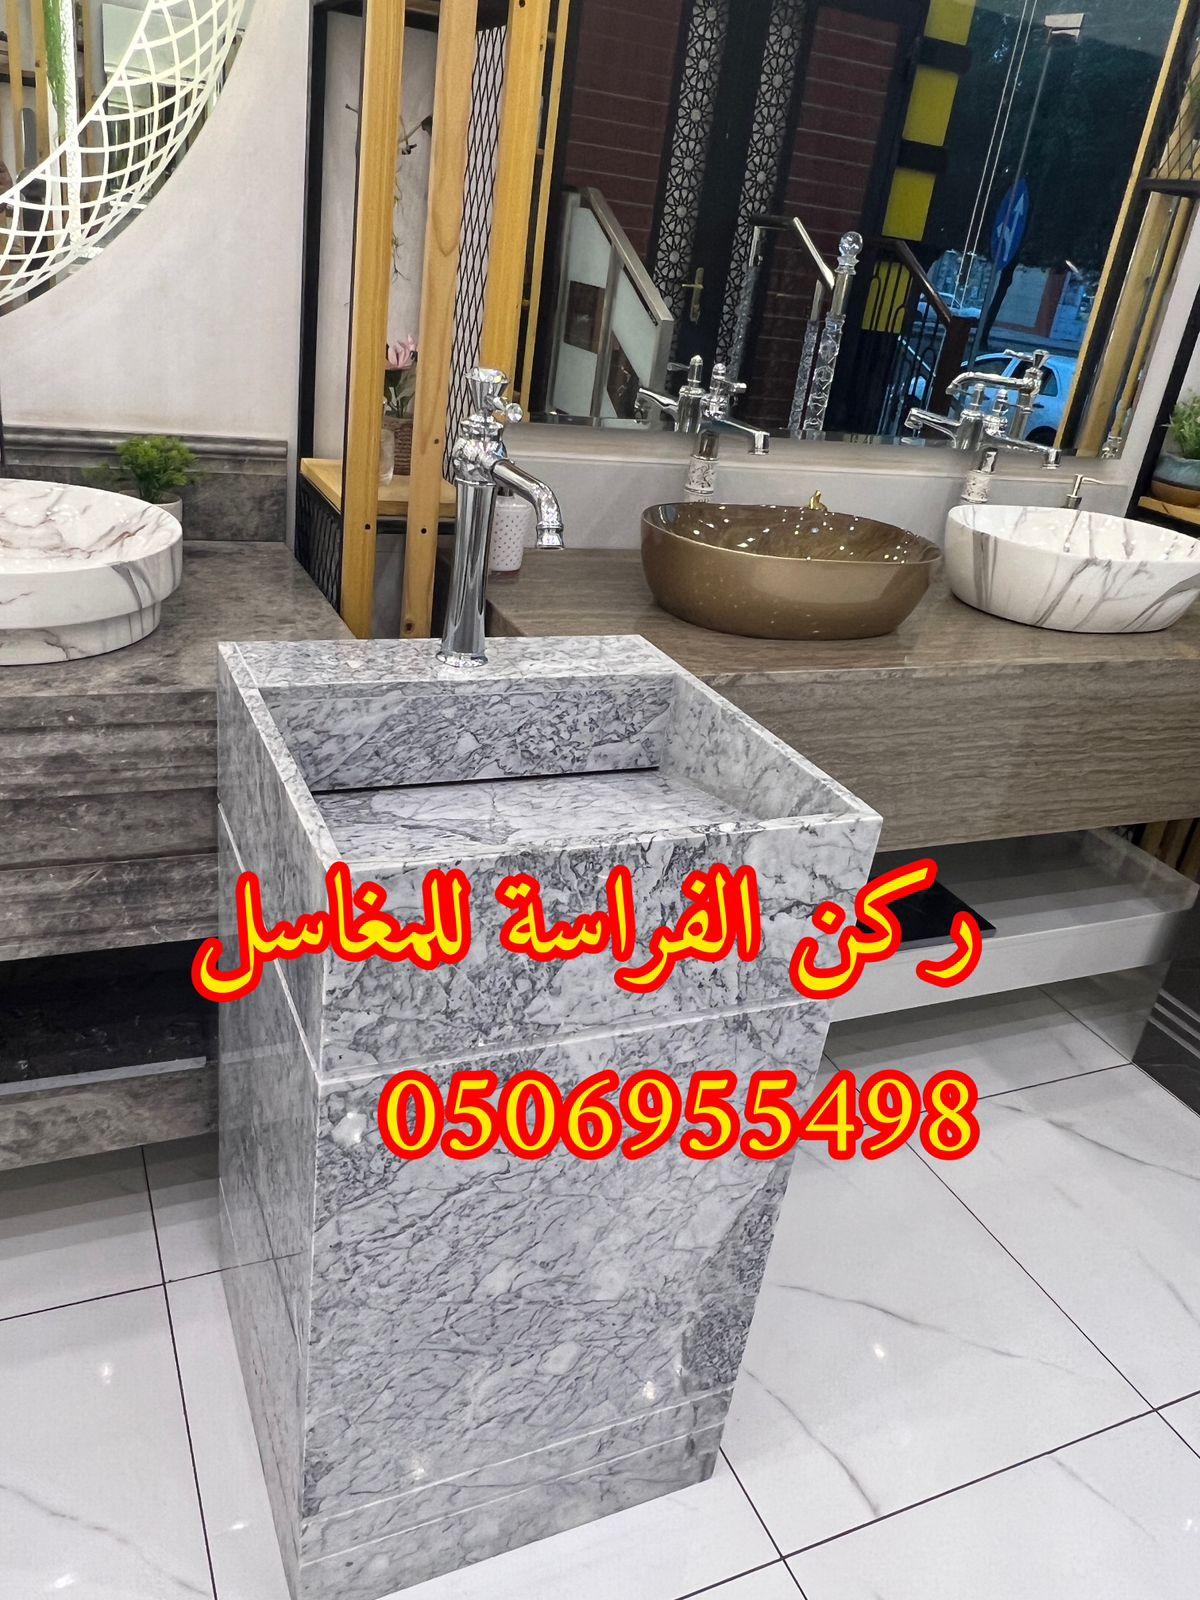 مغاسل حمامات رخام مودرن فخمة في الرياض,0506955498 512695694